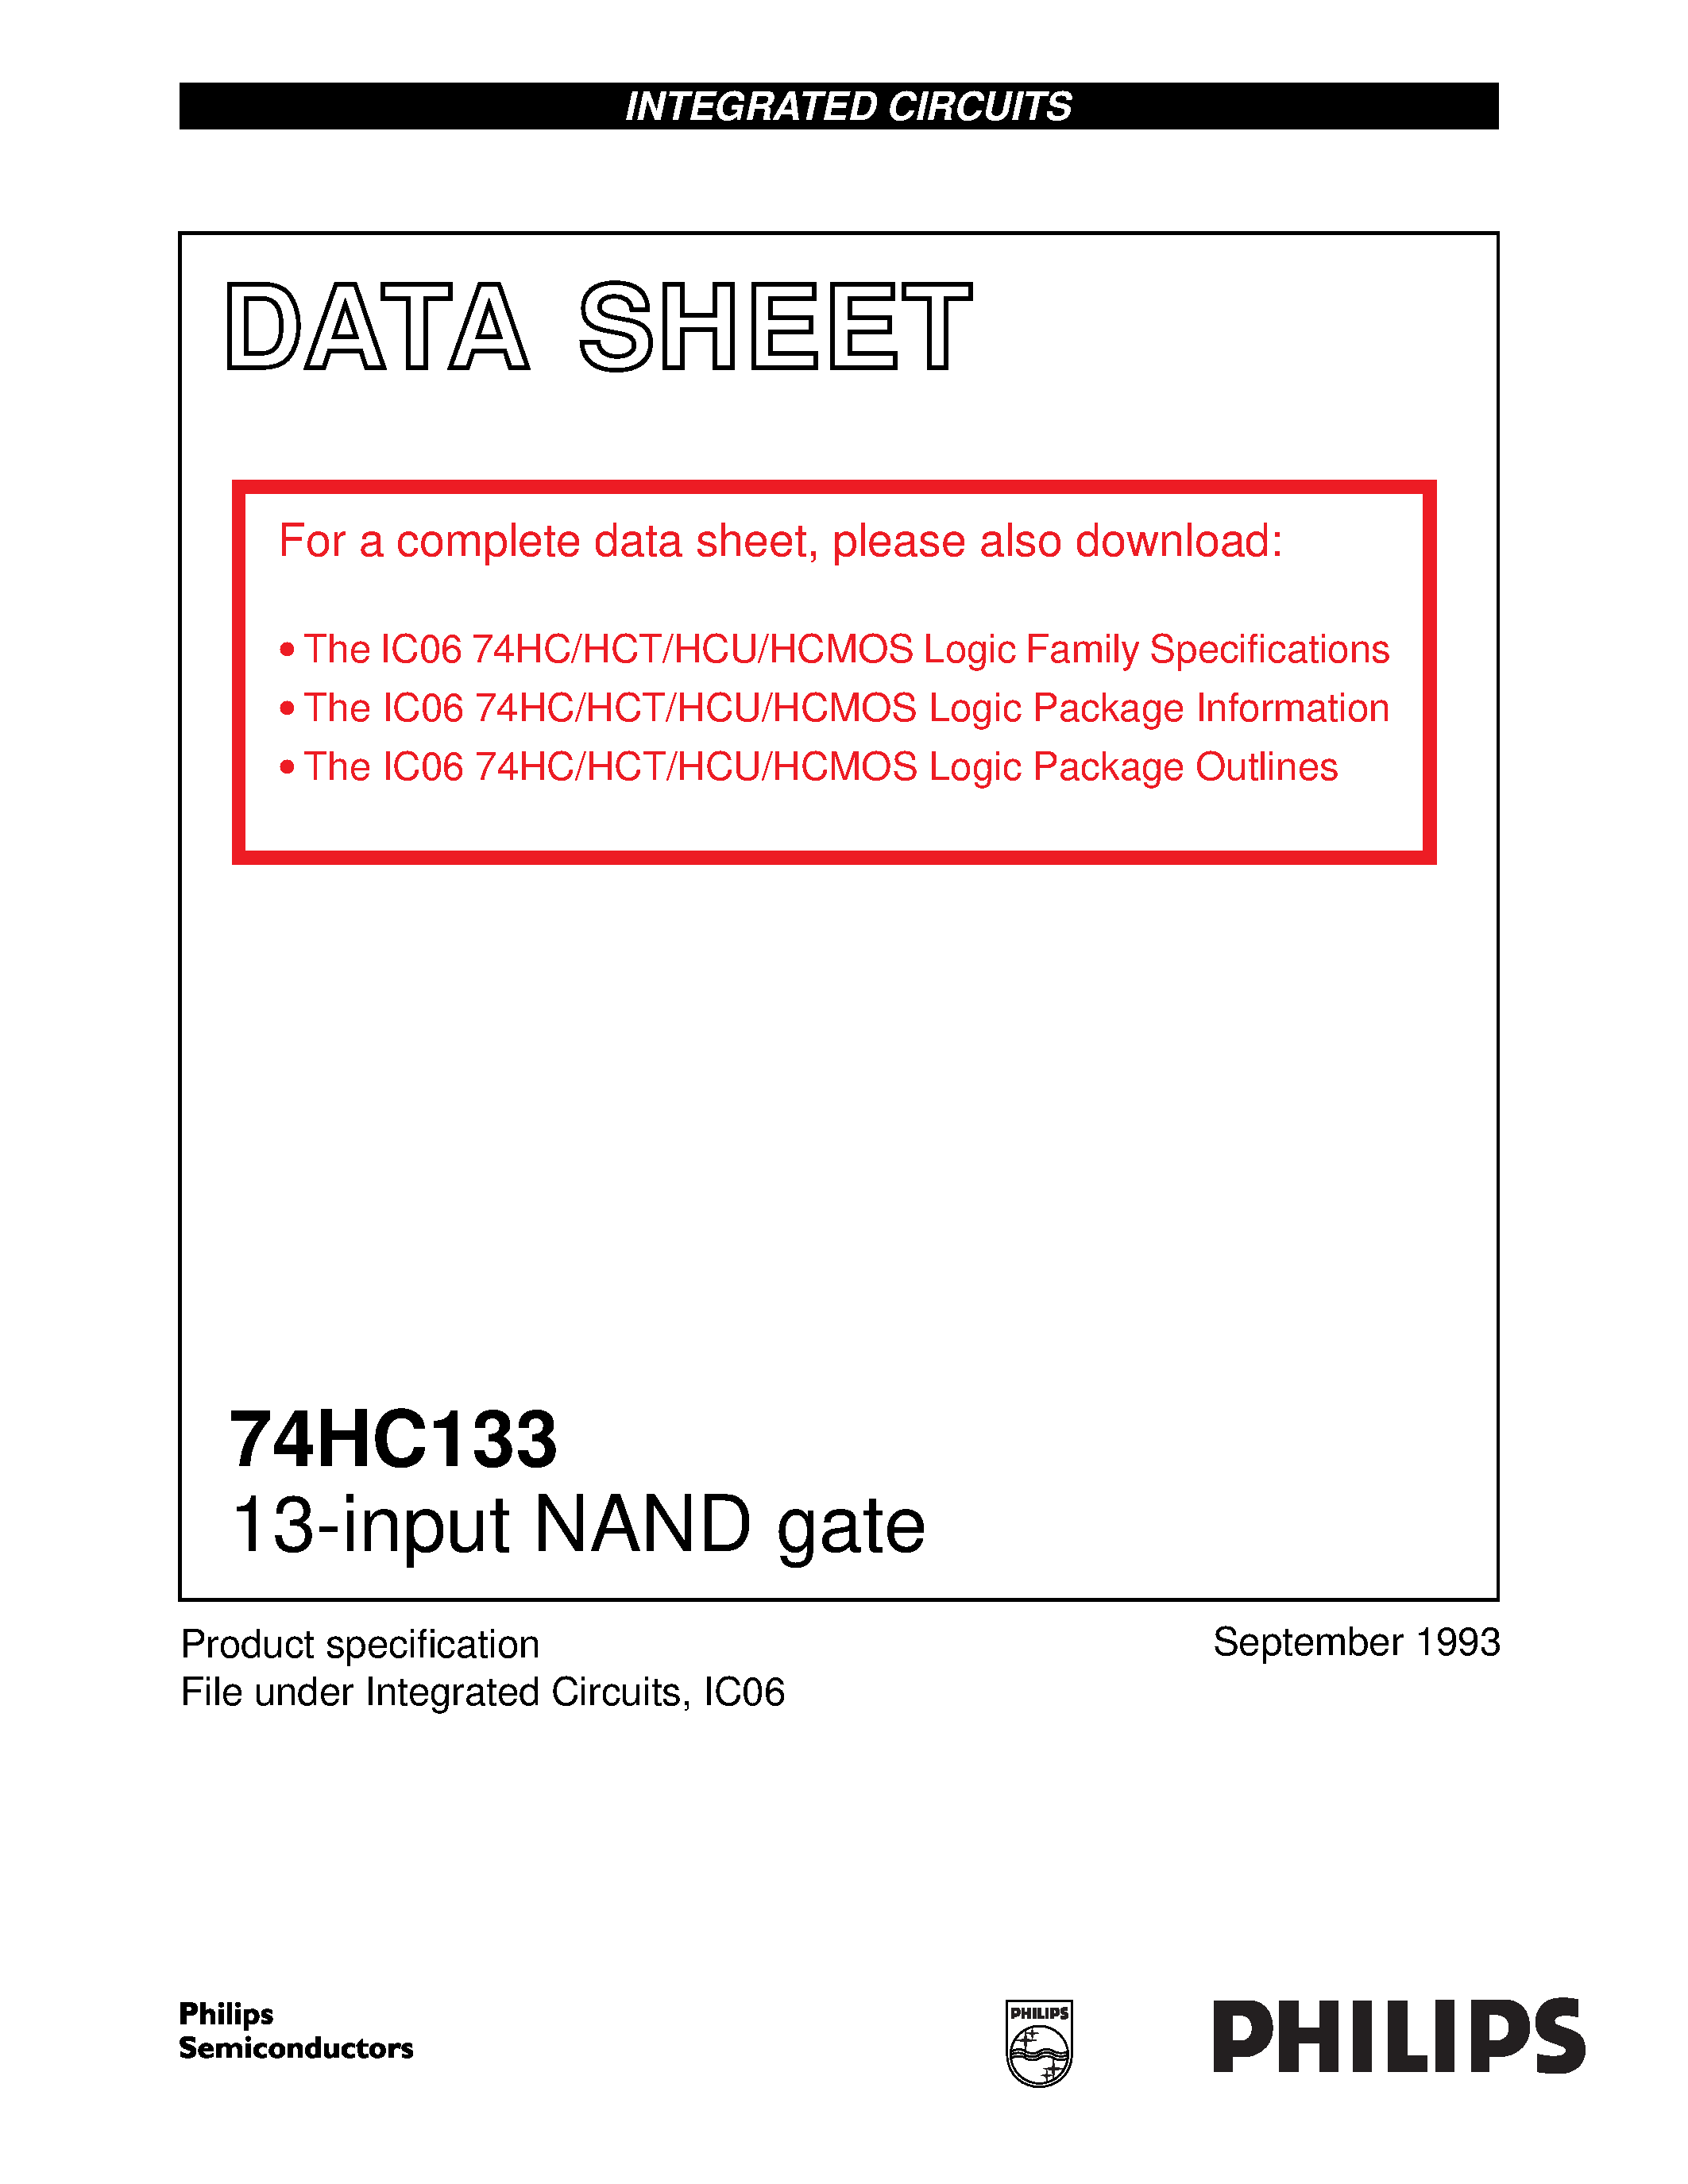 Даташит 74HC133D - 13-input NAND gate страница 1